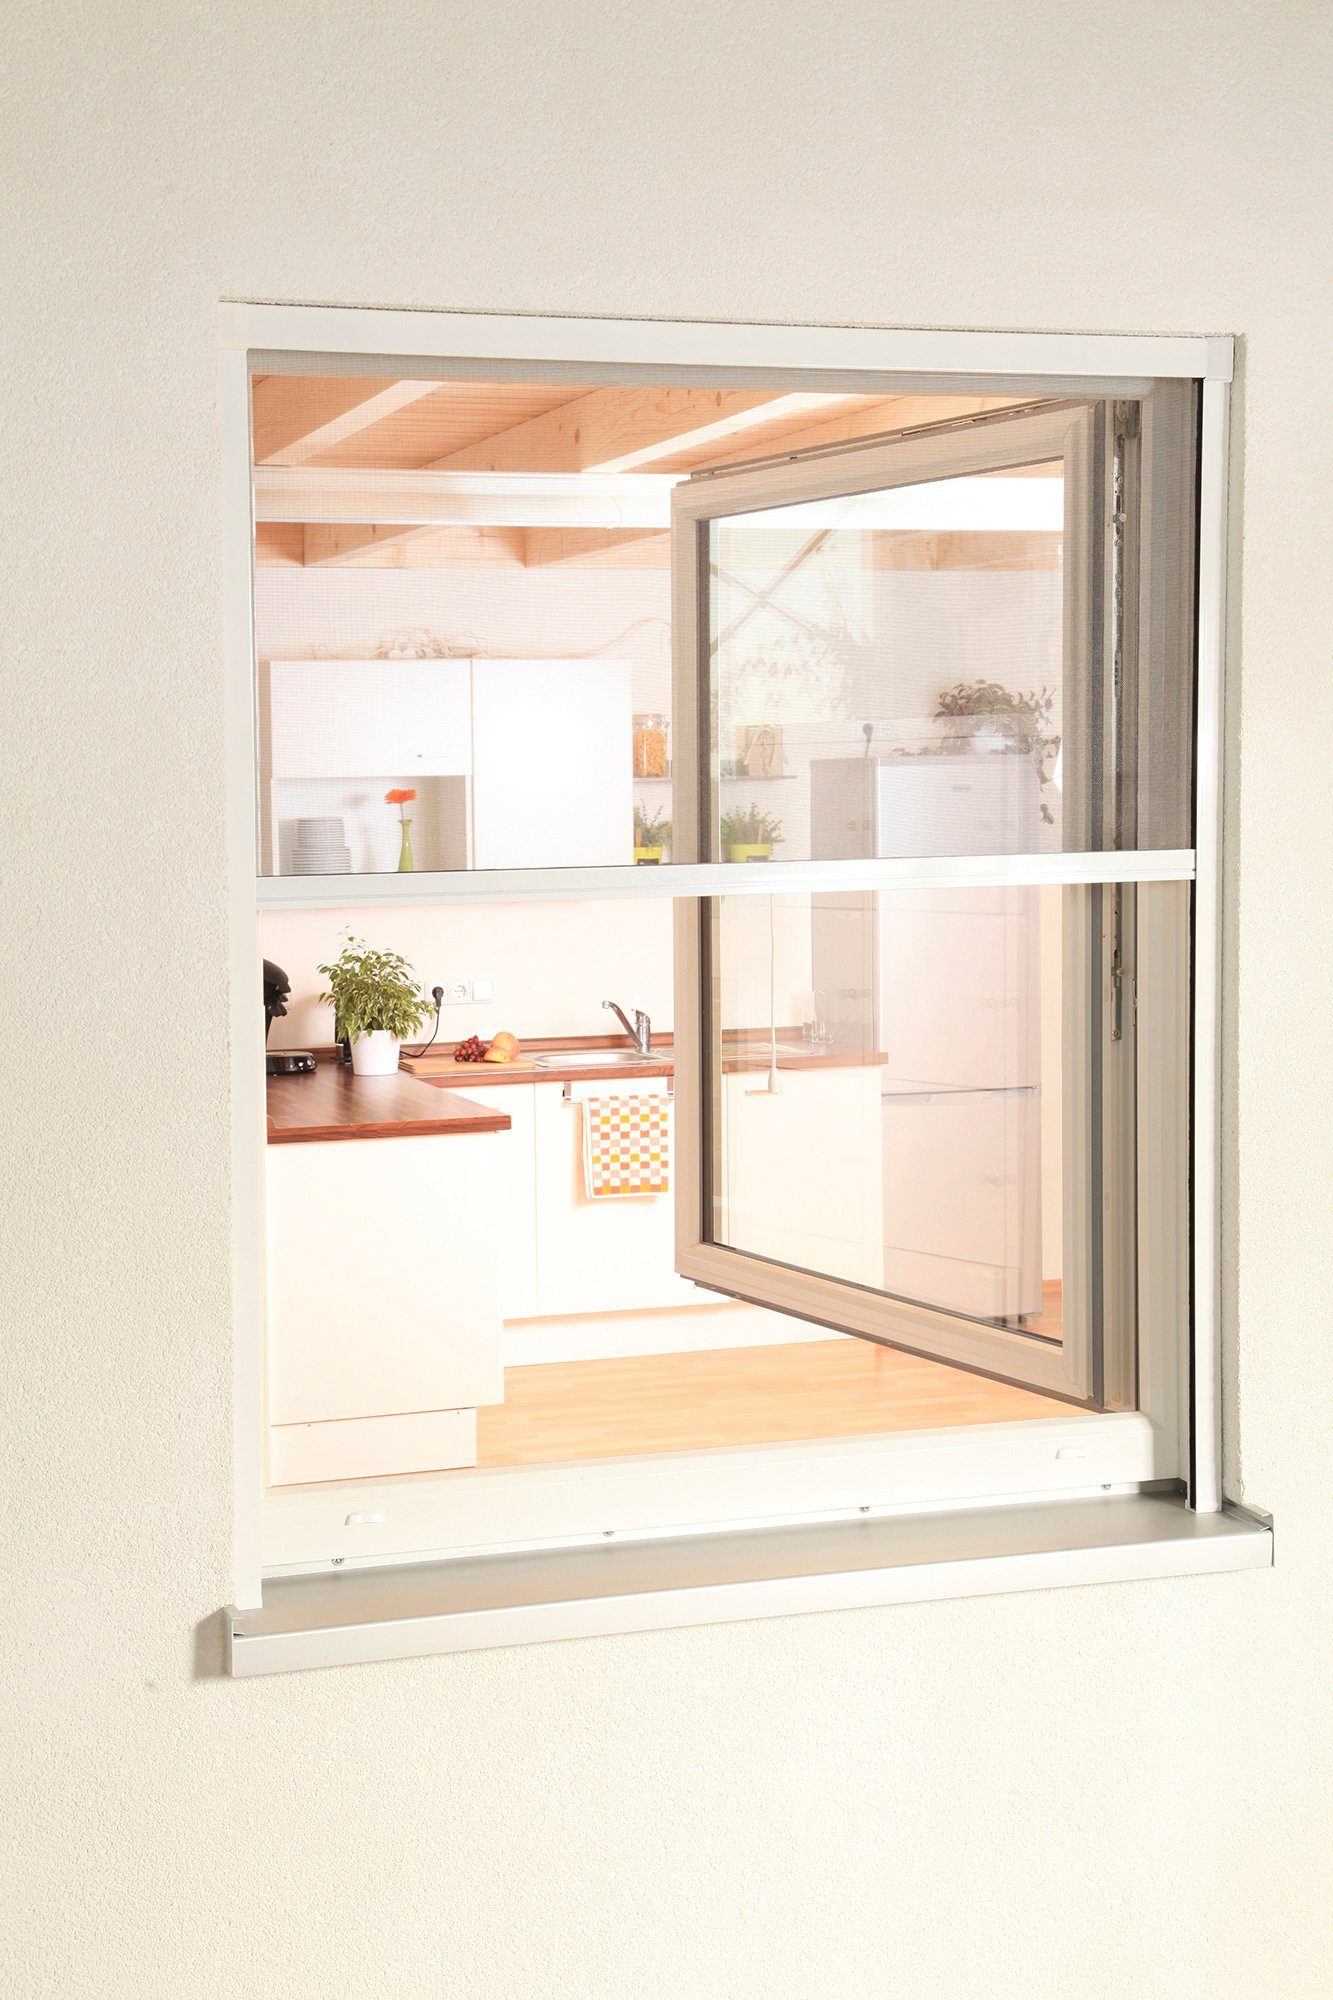 SMART, Fenster, BxH: Insektenschutzrollo verschraubt, hecht transparent, cm international, 100x160 weiß/anthrazit, für